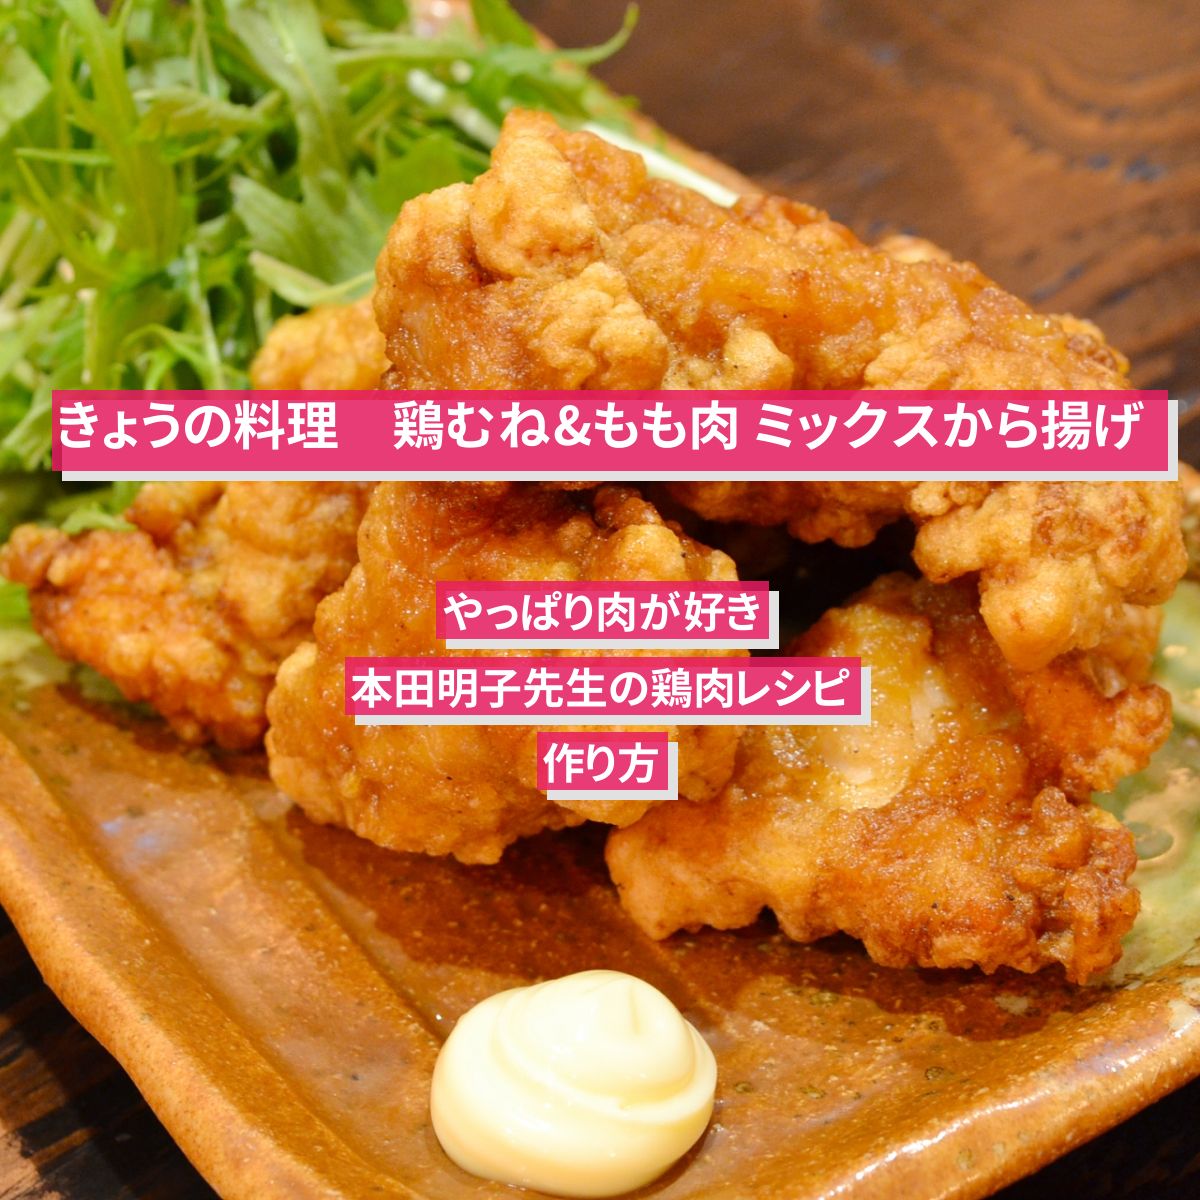 【きょうの料理】『鶏むね&もも肉 ミックスから揚げ』本田明子先生の鶏肉レシピ･作り方